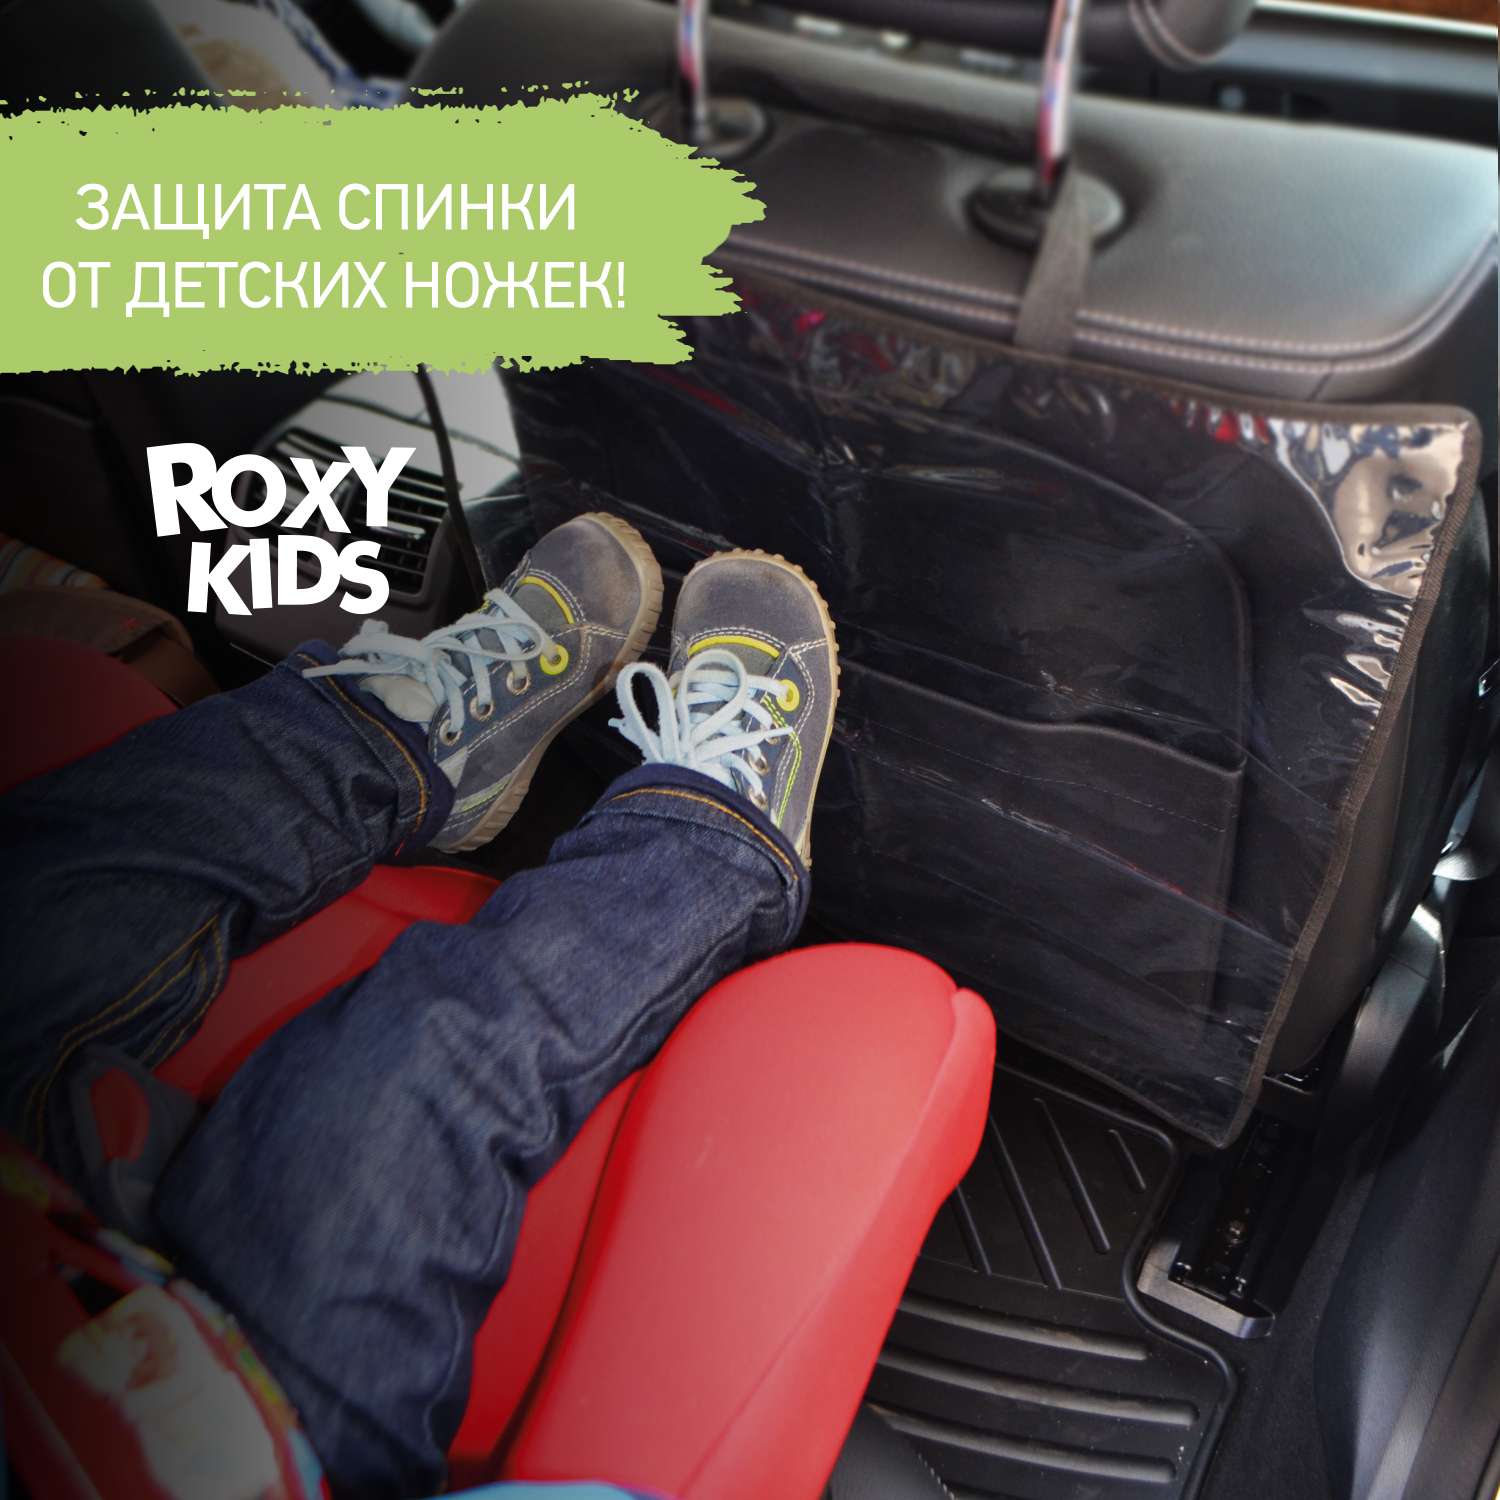 Накидка защитная ROXY-KIDS на спинку переднего автомобильного сиденья - фото 1